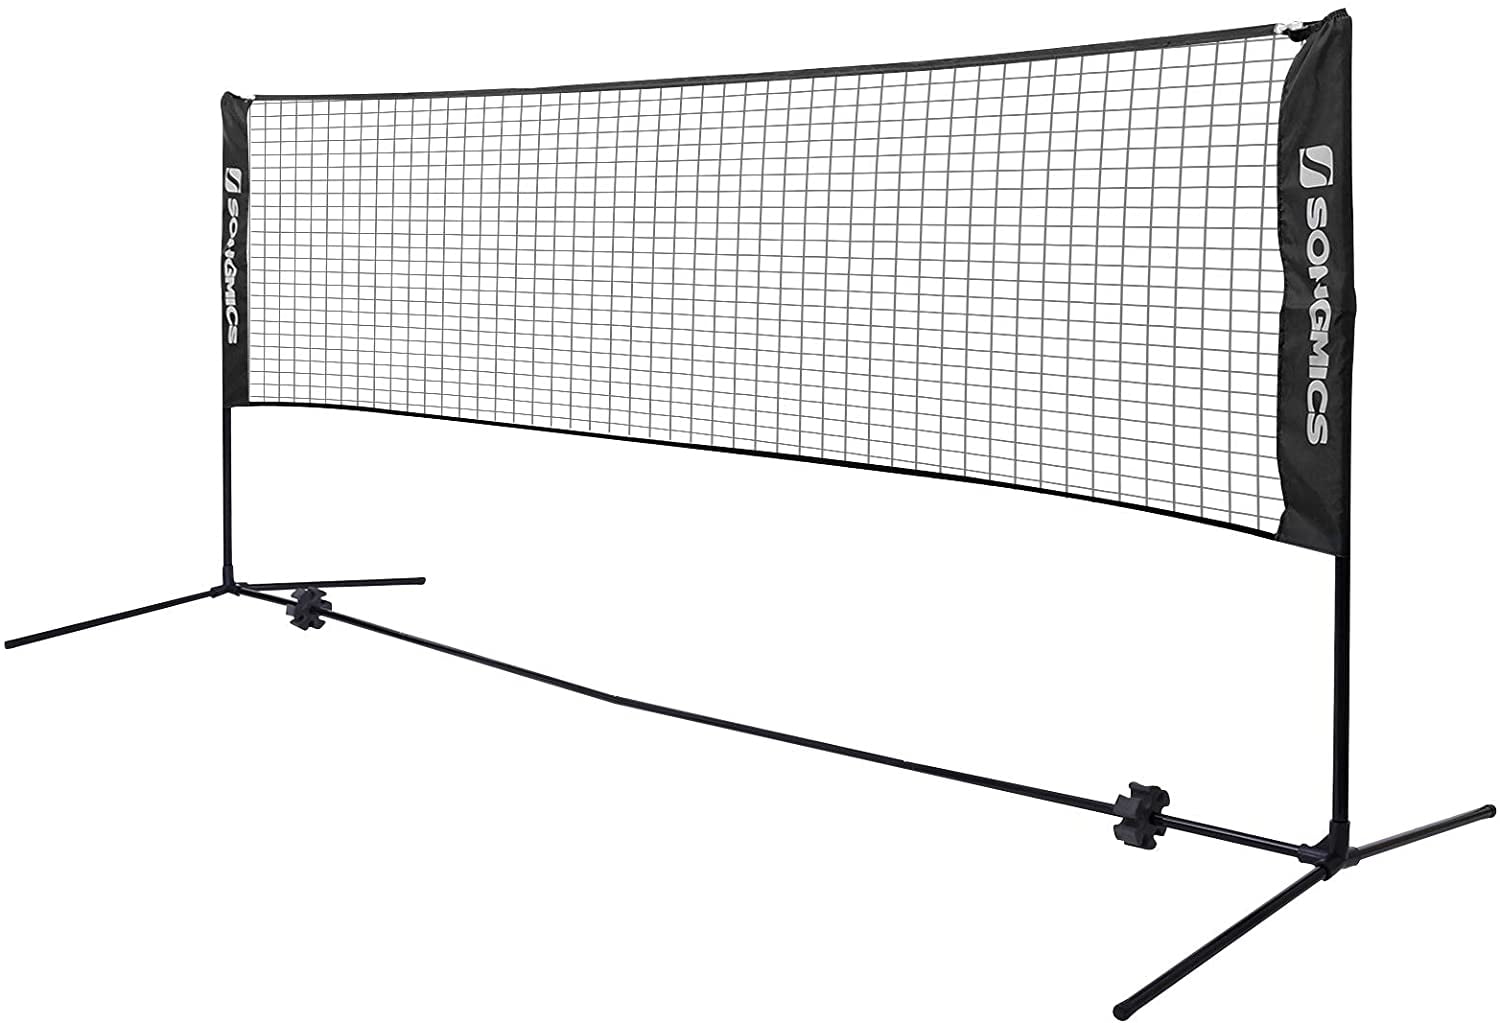 Badminton Net Portable Tennis Volleyball Pickleball Sport Net for Indoor Outdoor 